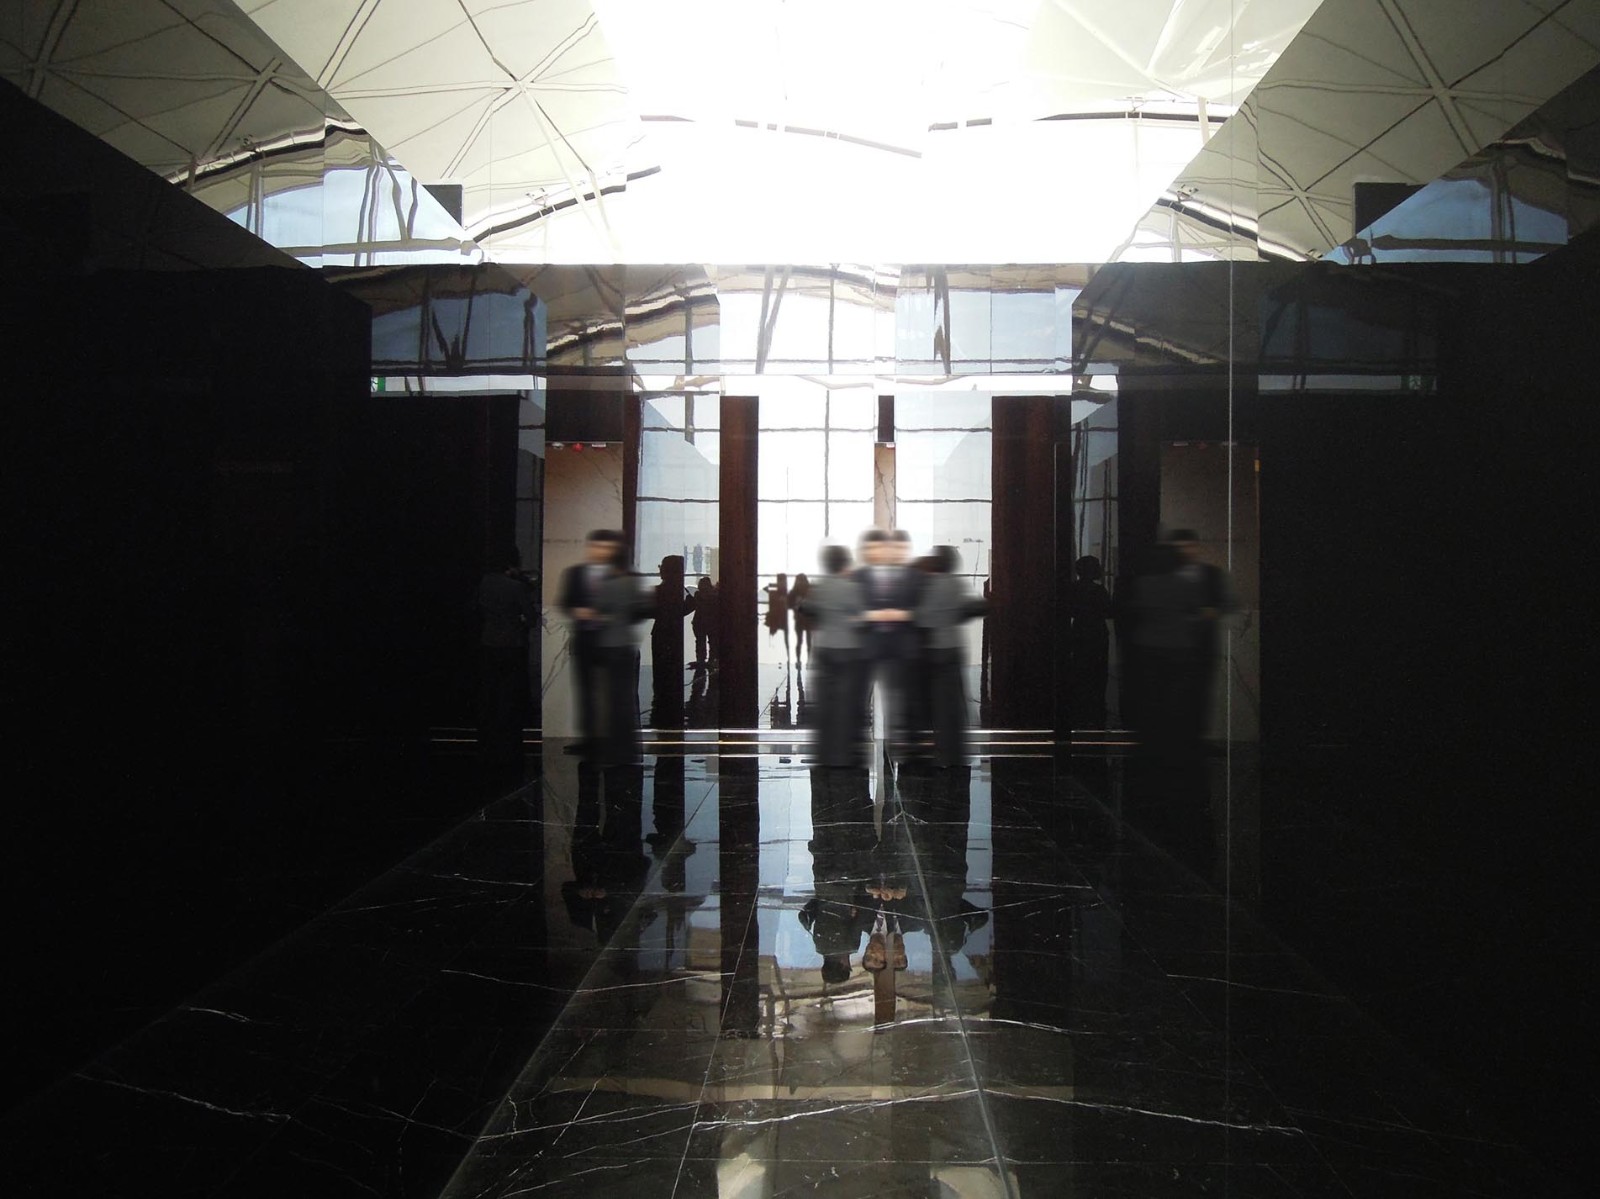 Hong Kong Airport Departure Hall